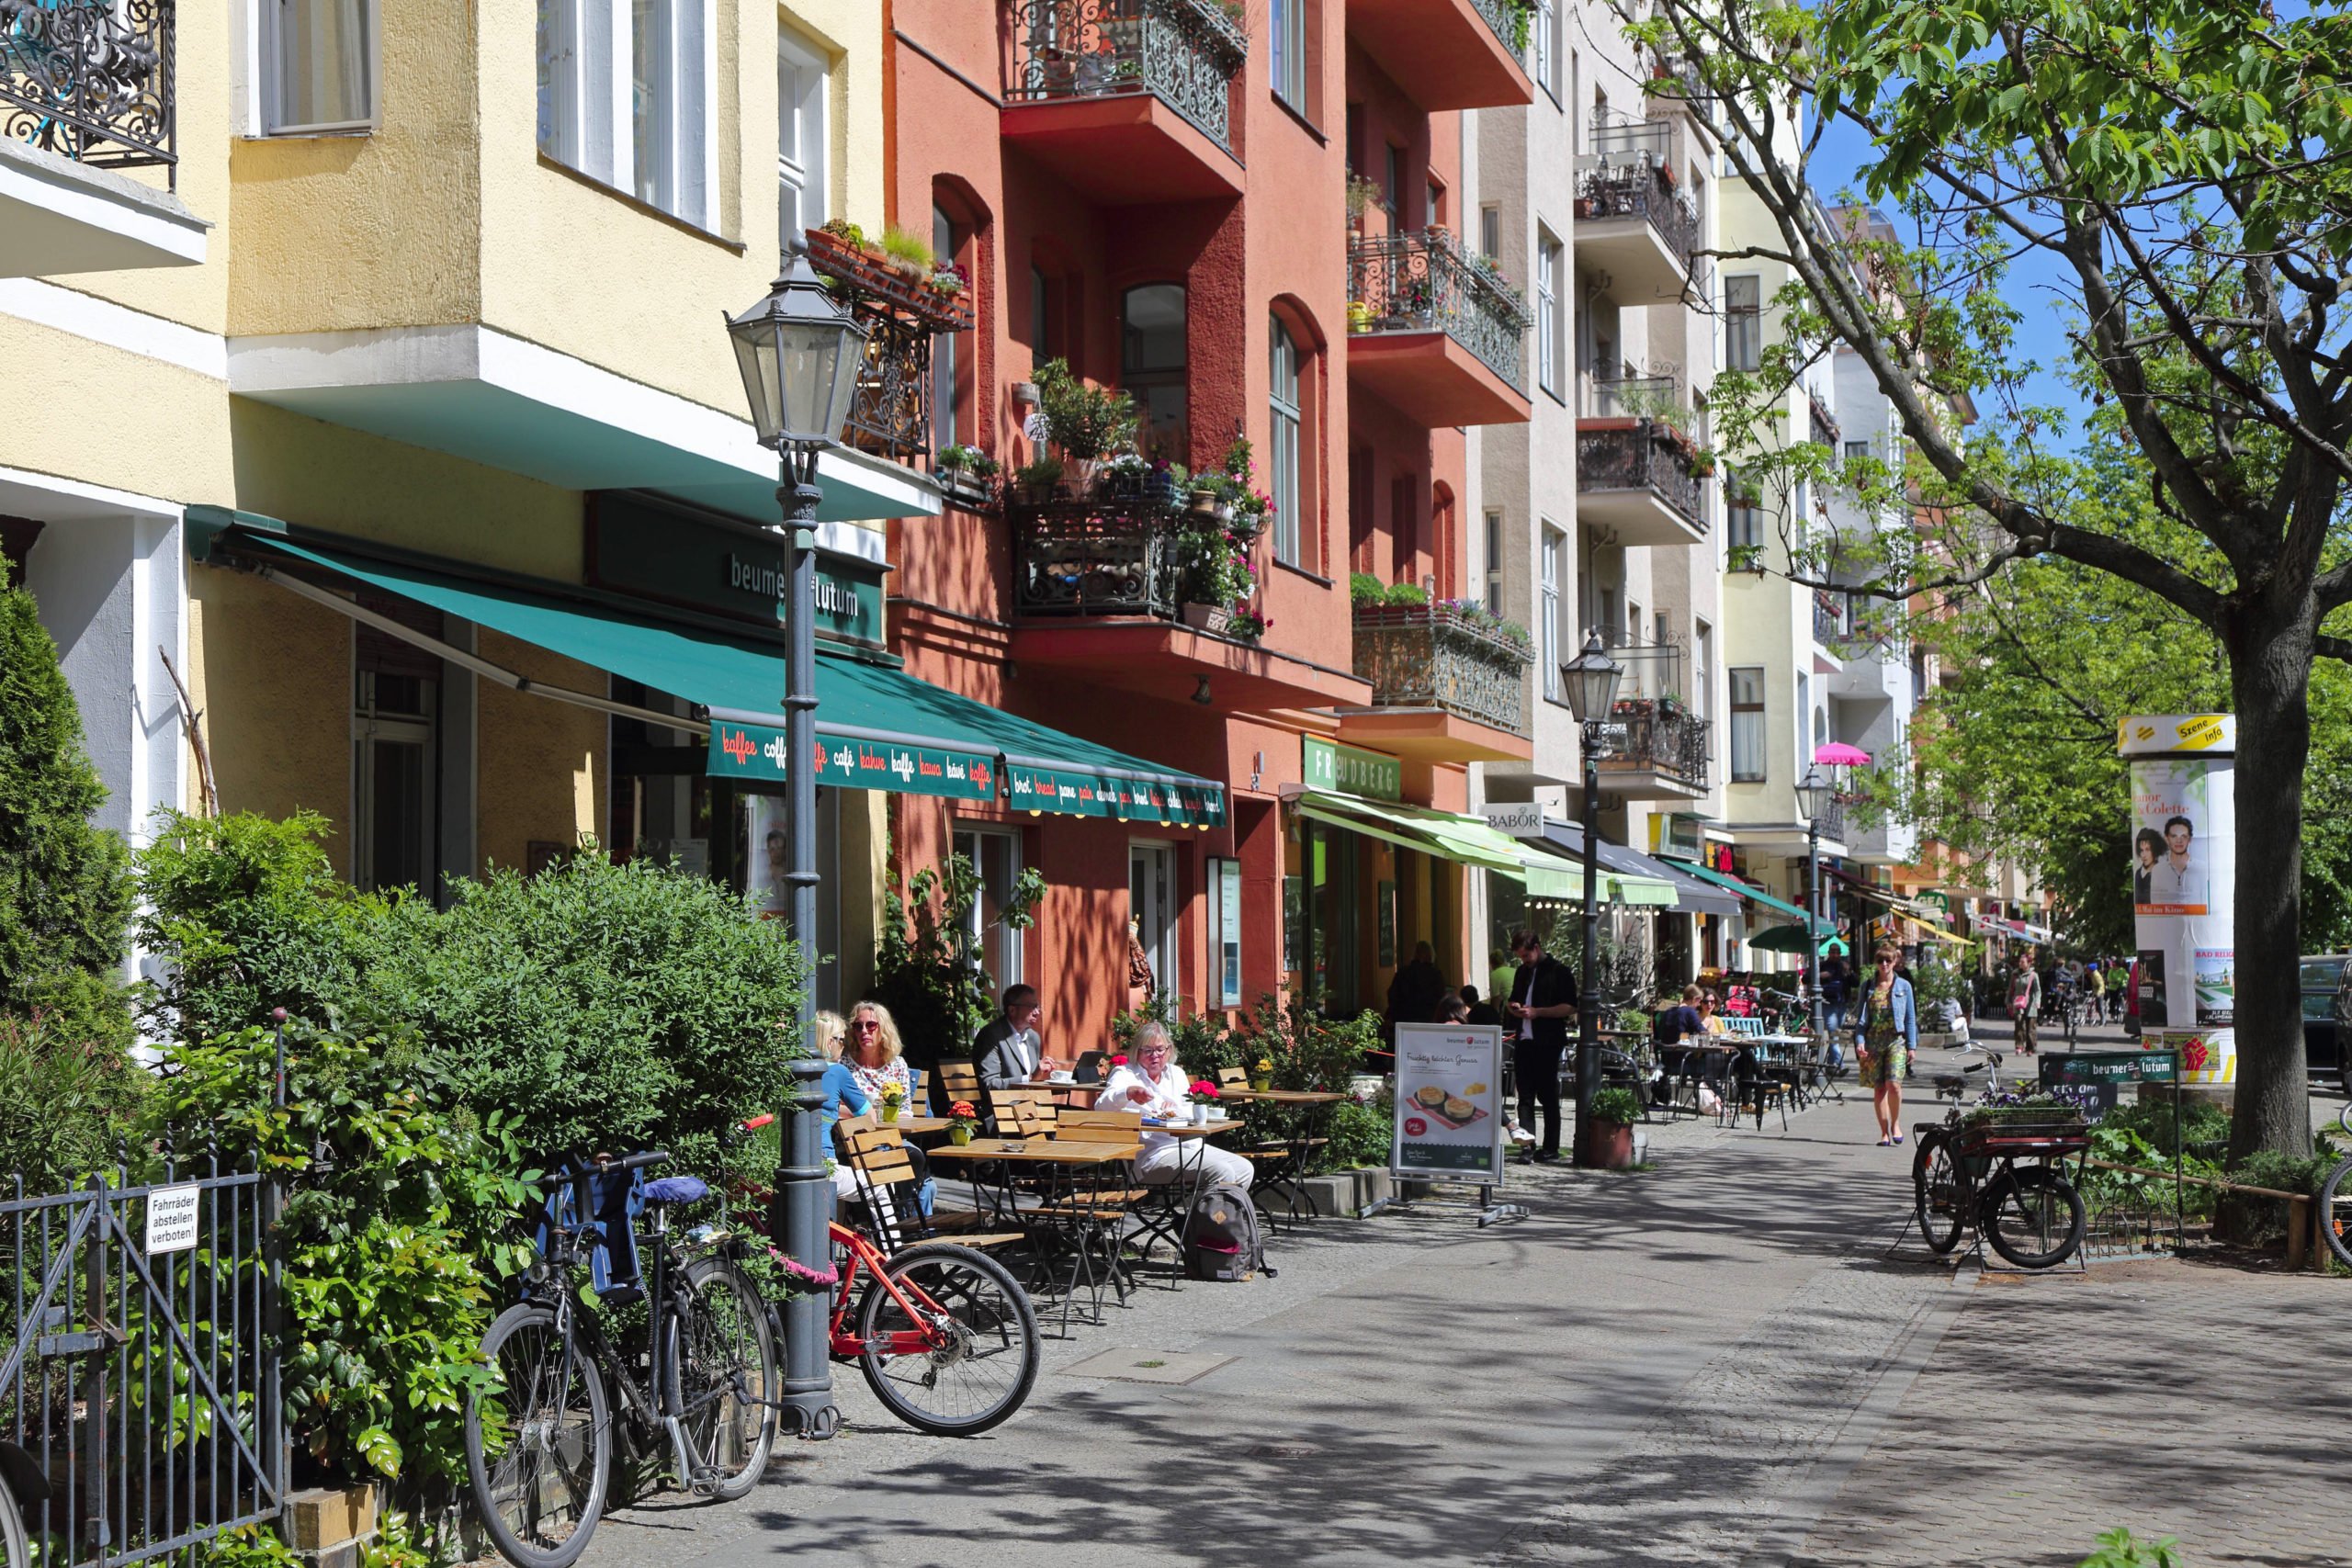 Schönste Straßen Berlins Die Körtestraße mit ihren denkmalgeschützten Wohnhäusern und verträumten Cafés ist ein kleines Universum für sich.